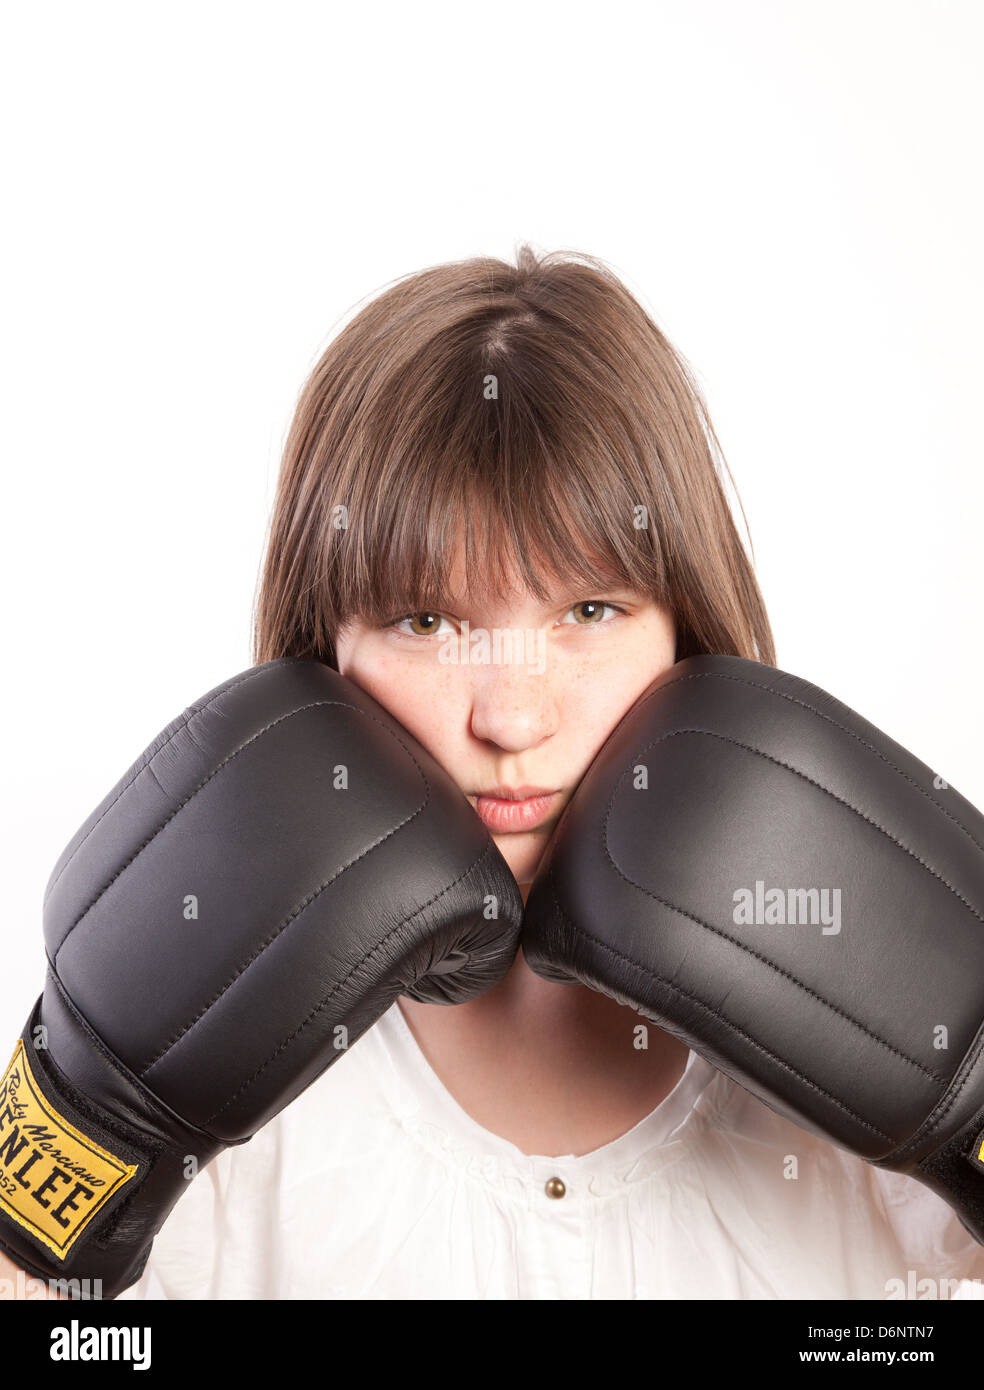 Deutschland, ein Mädchen mit Boxhandschuhen Stockfoto